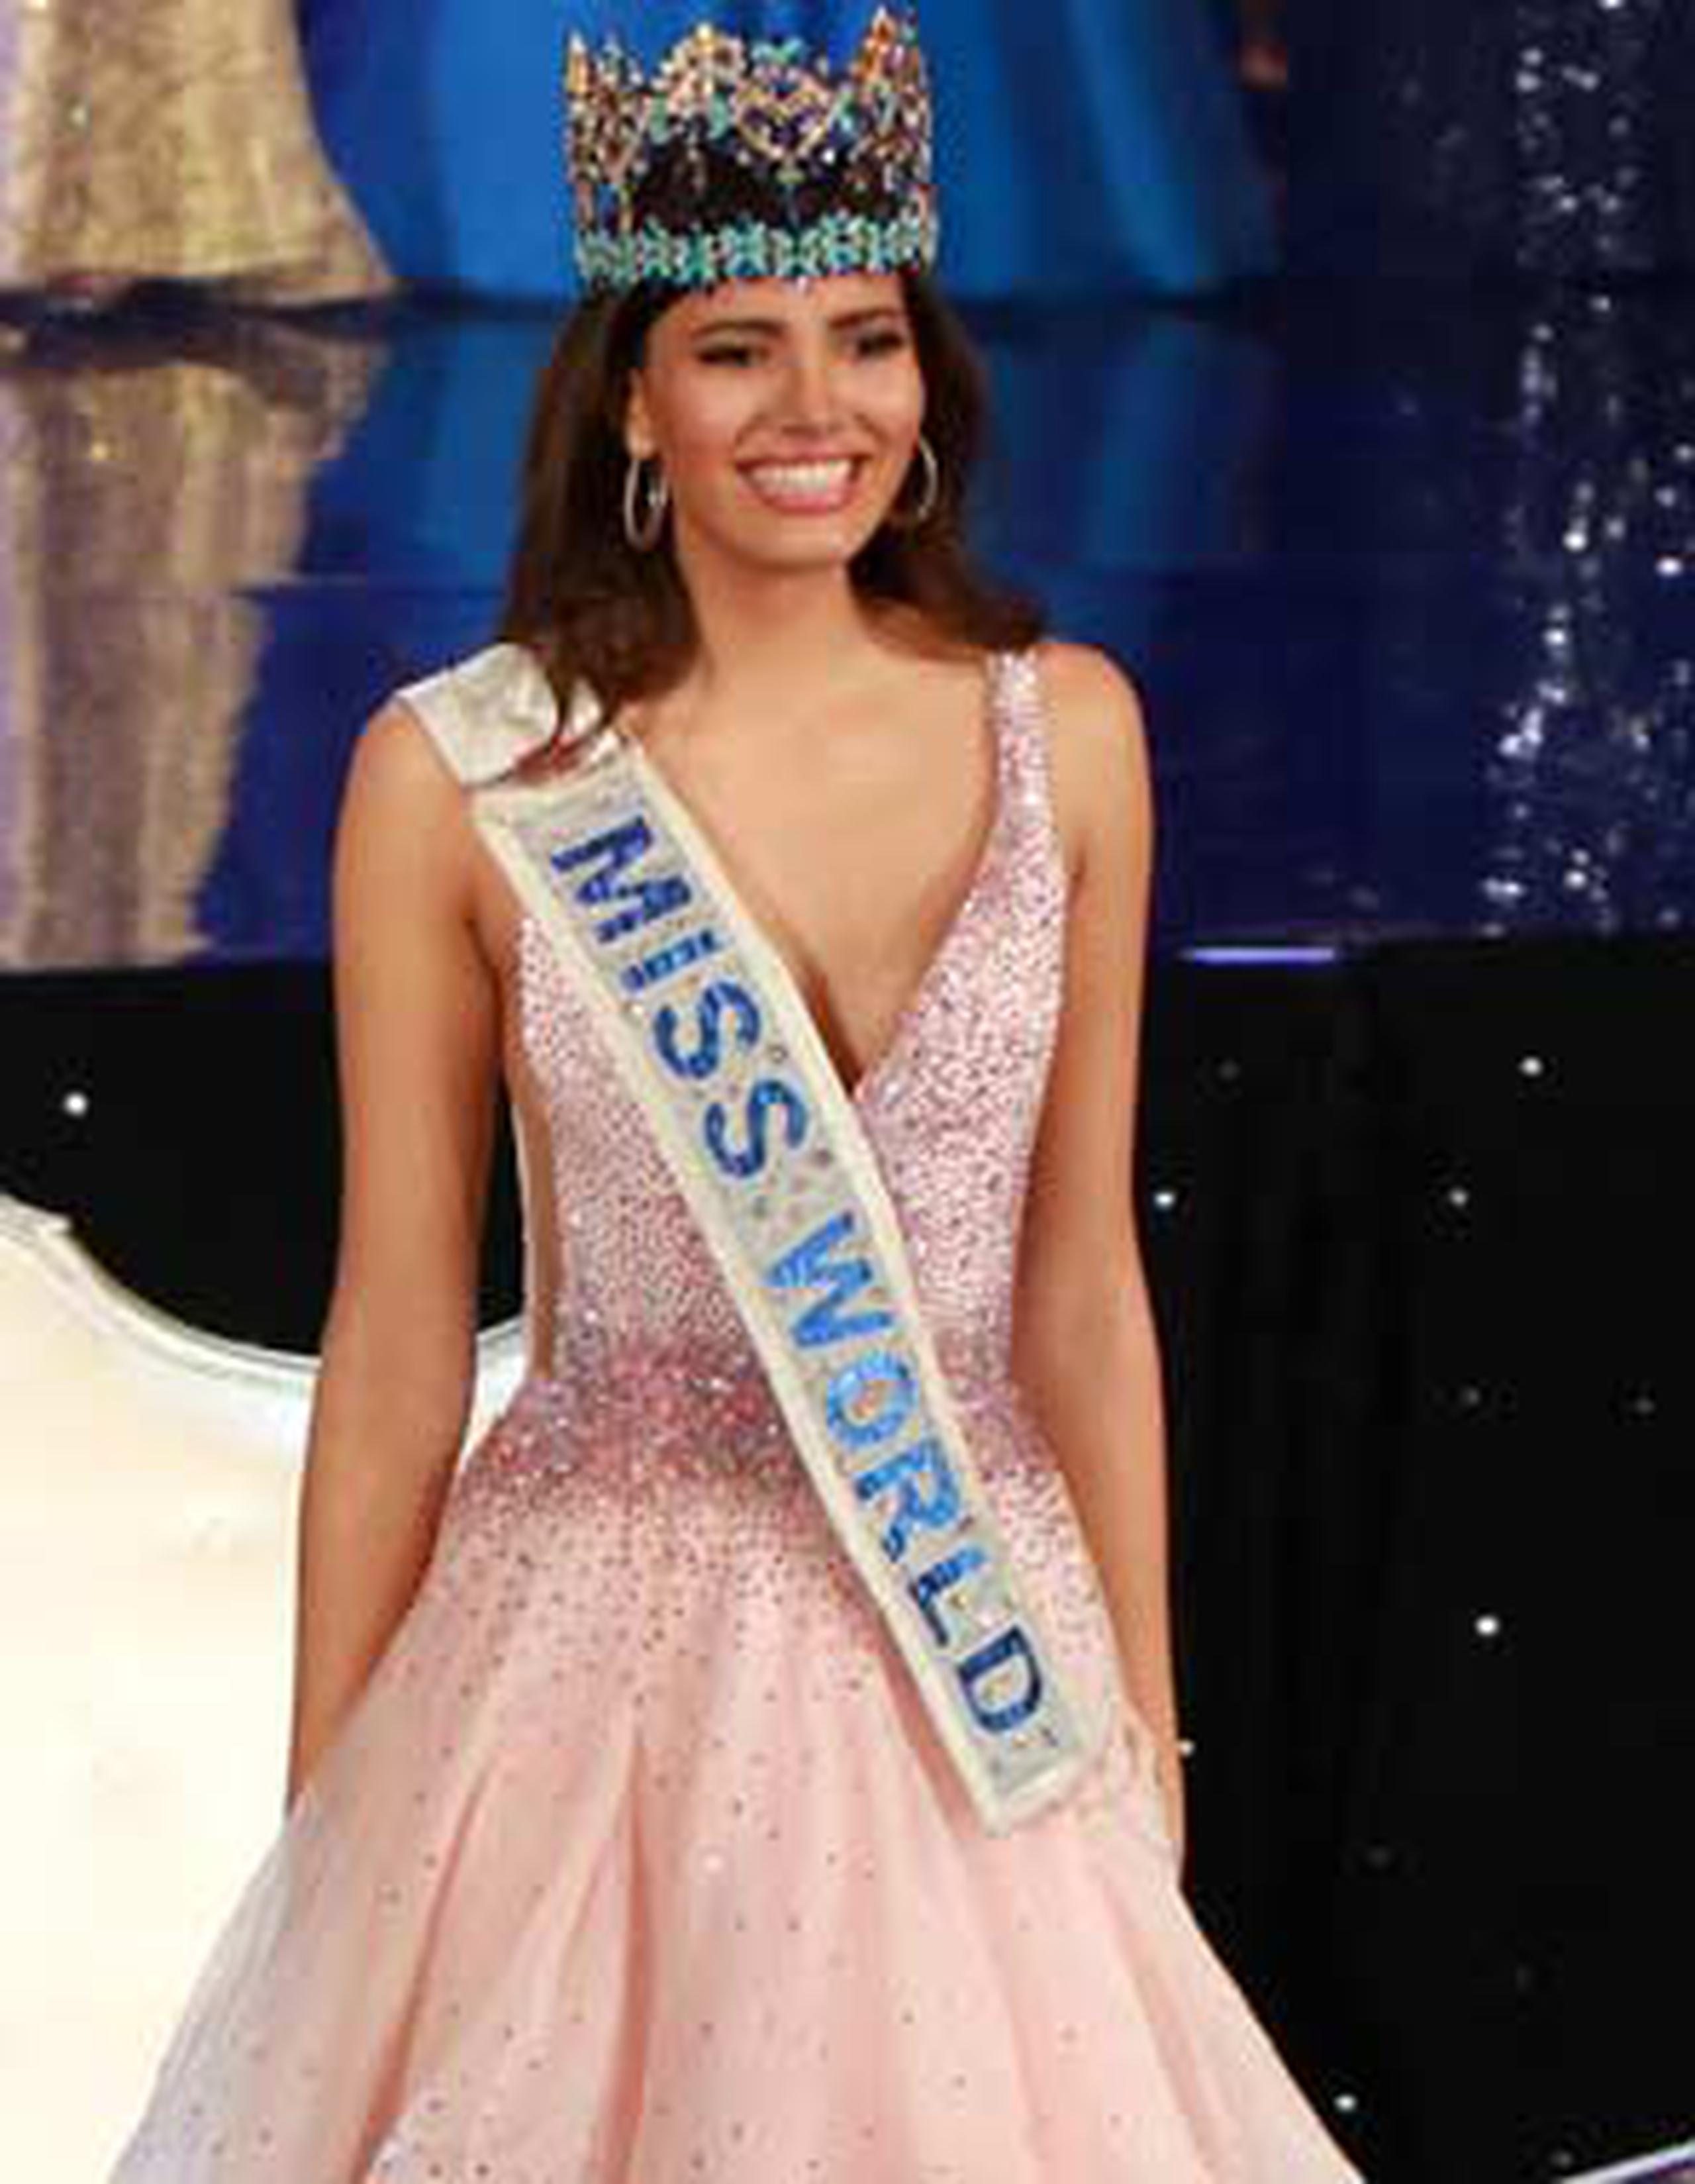 Stephanie del valle se impone ante 177 candidatas en la competencia celebrada en Estados Unidos. (Facebook/Miss World)